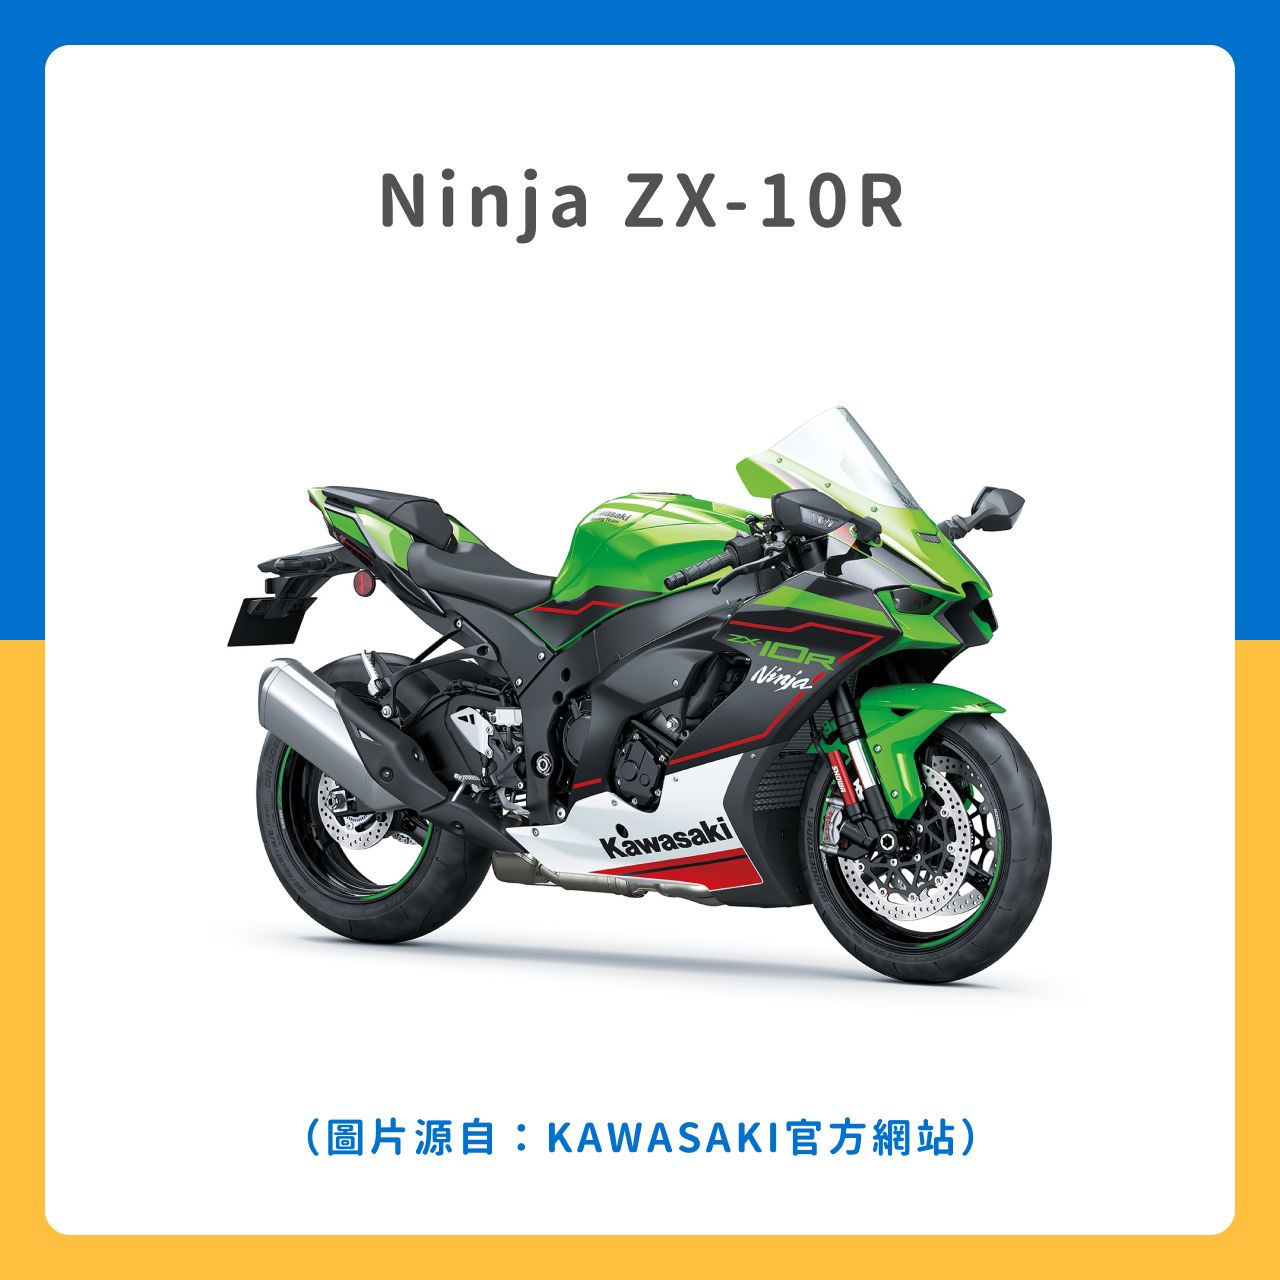 Ninja ZX-10R